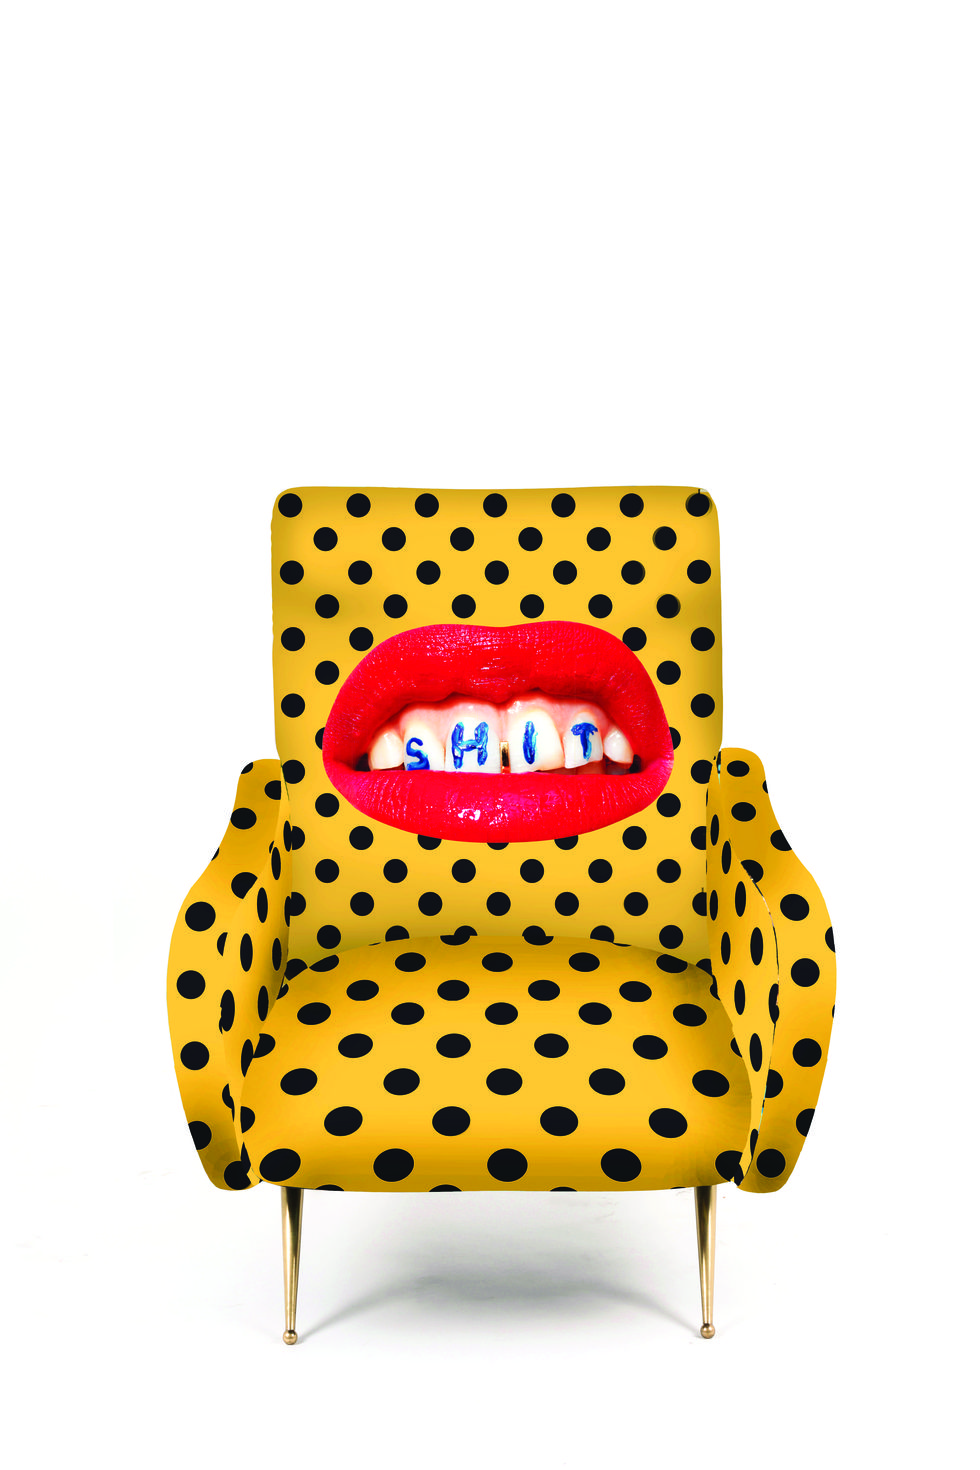 Yellow, Polka dot, Furniture, Pattern, Orange, Chair, Design, 